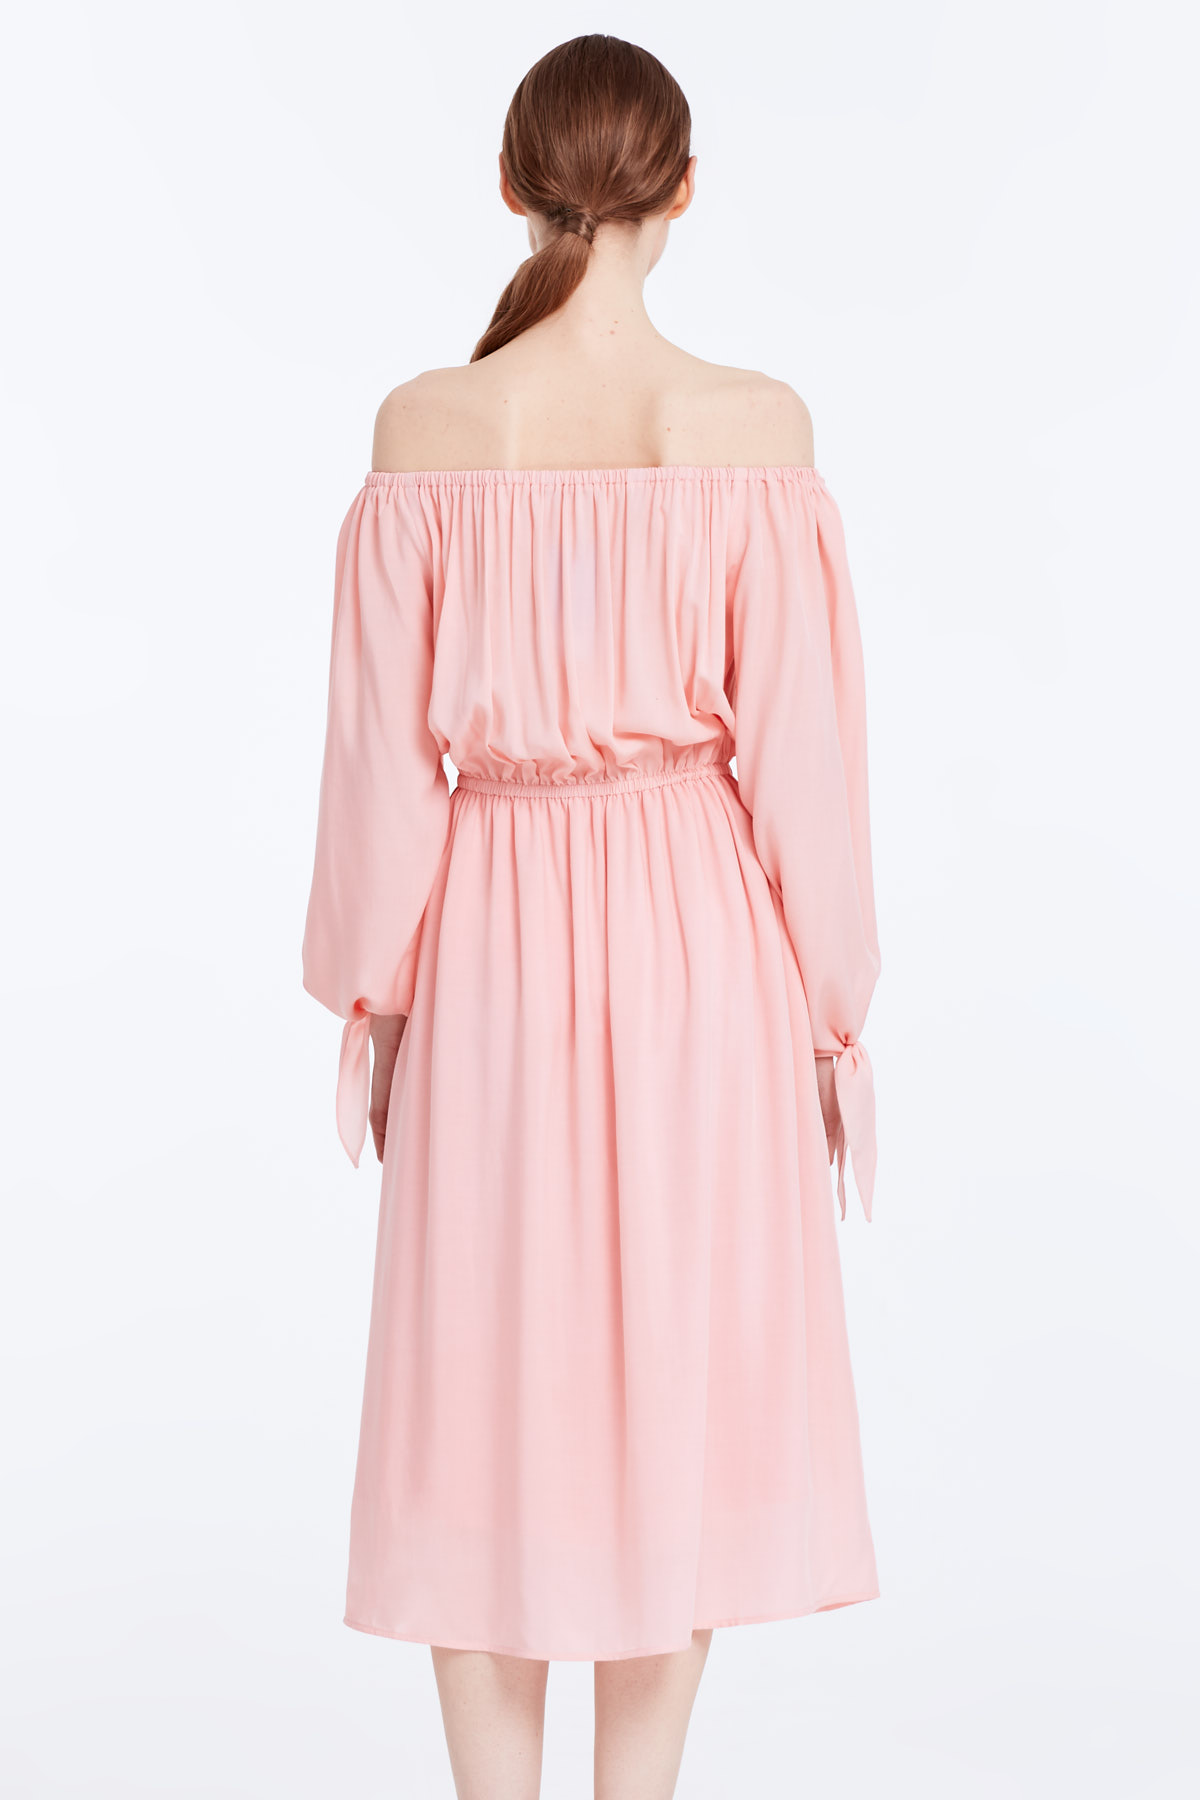 Off-shoulder powder pink dress, photo 6